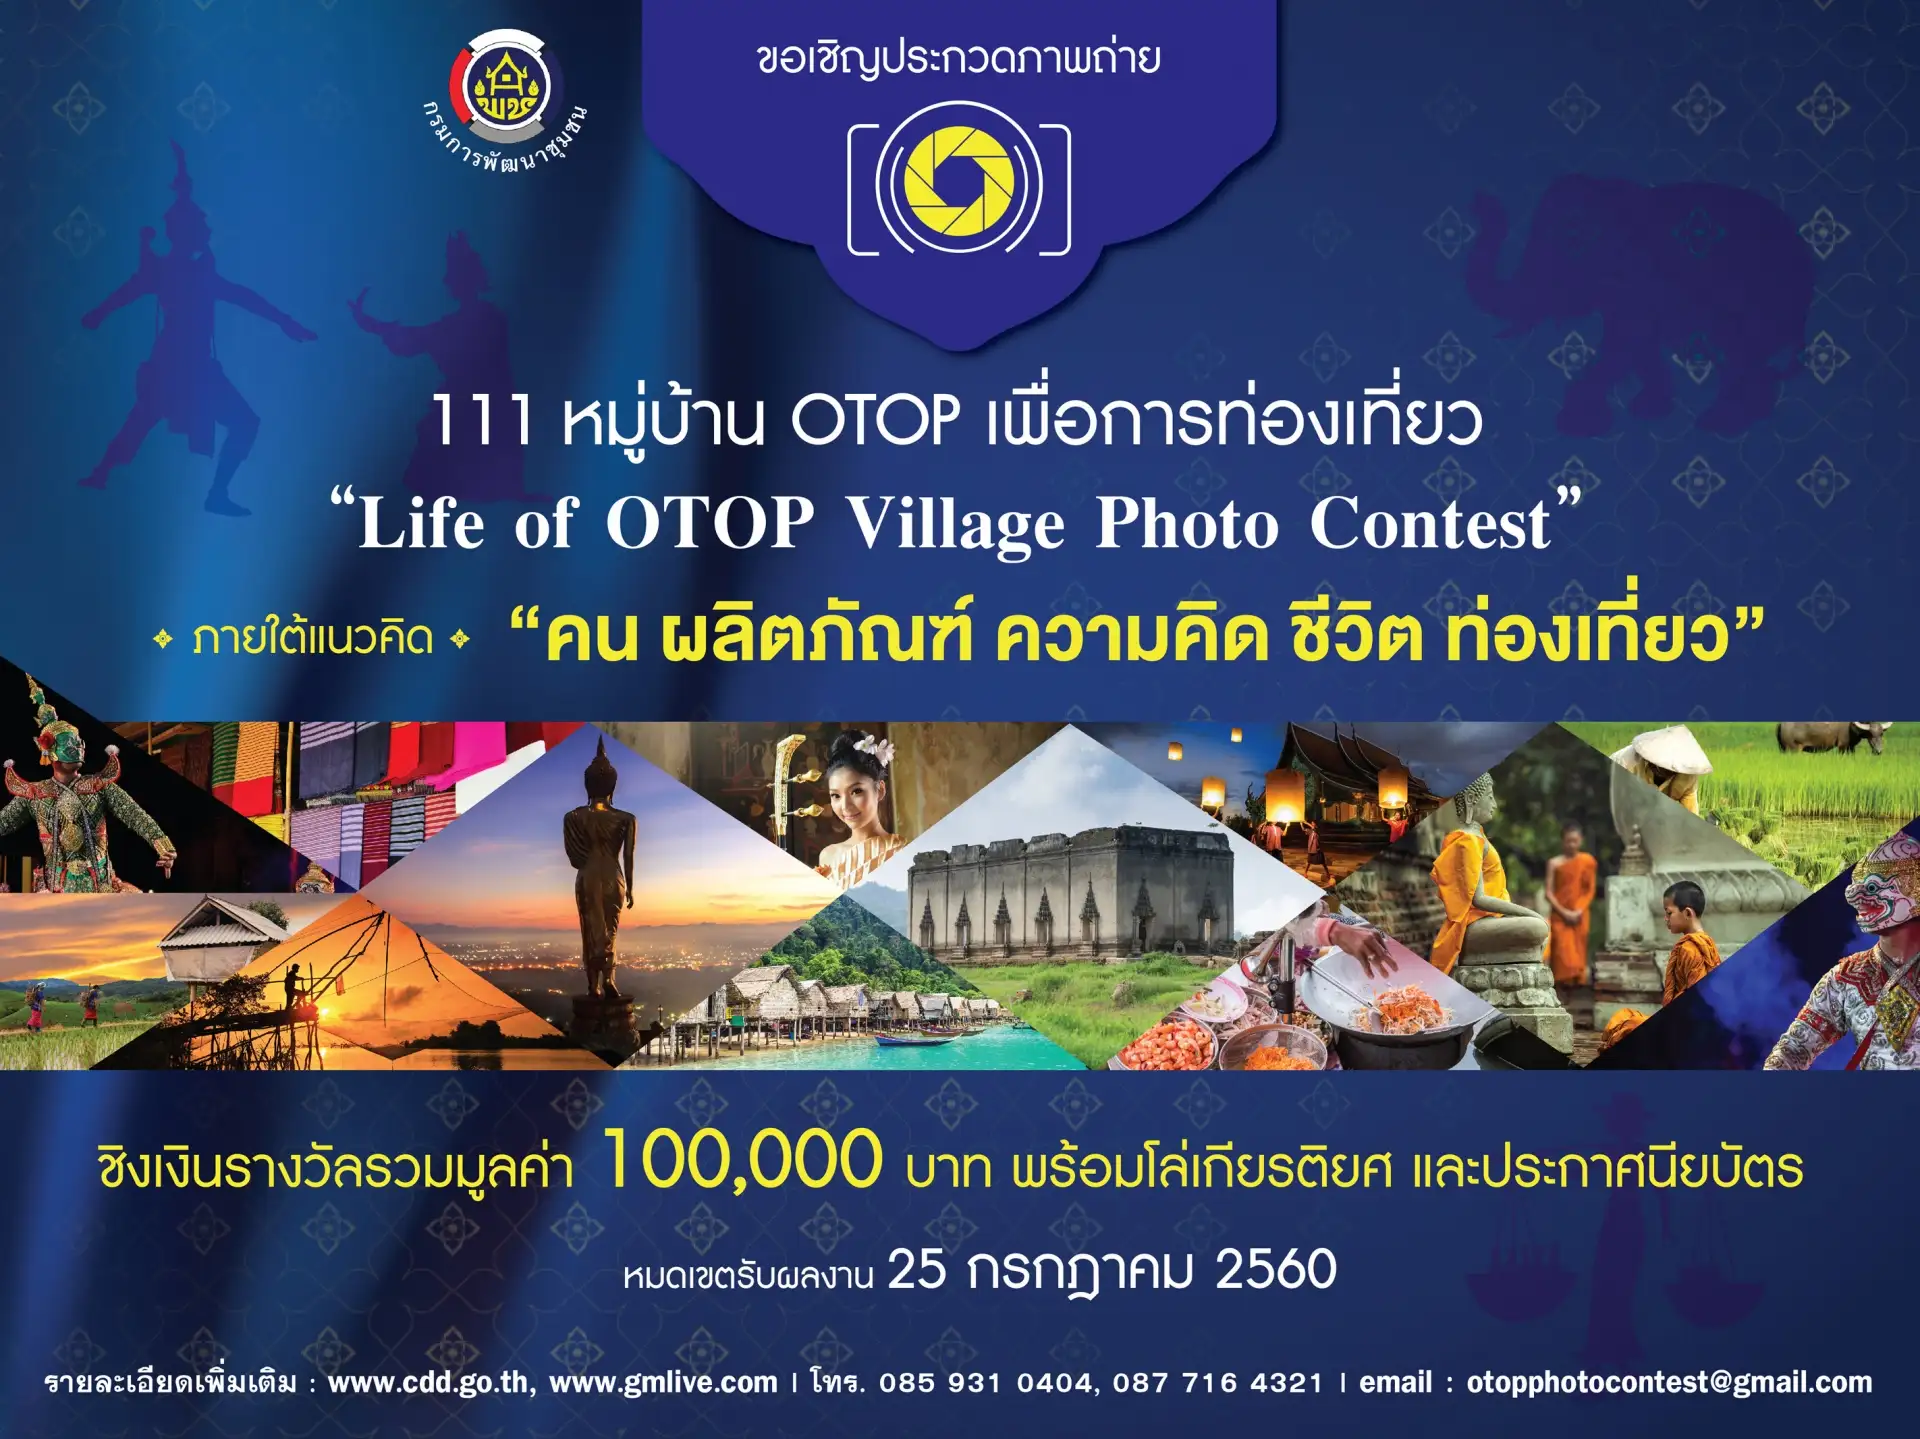 ขอเชิญร่วมประกวดภาพถ่ายหมู่บ้าน OTOP เพื่อการท่องเที่ยว “Life of OTOP Village Photo Contest”